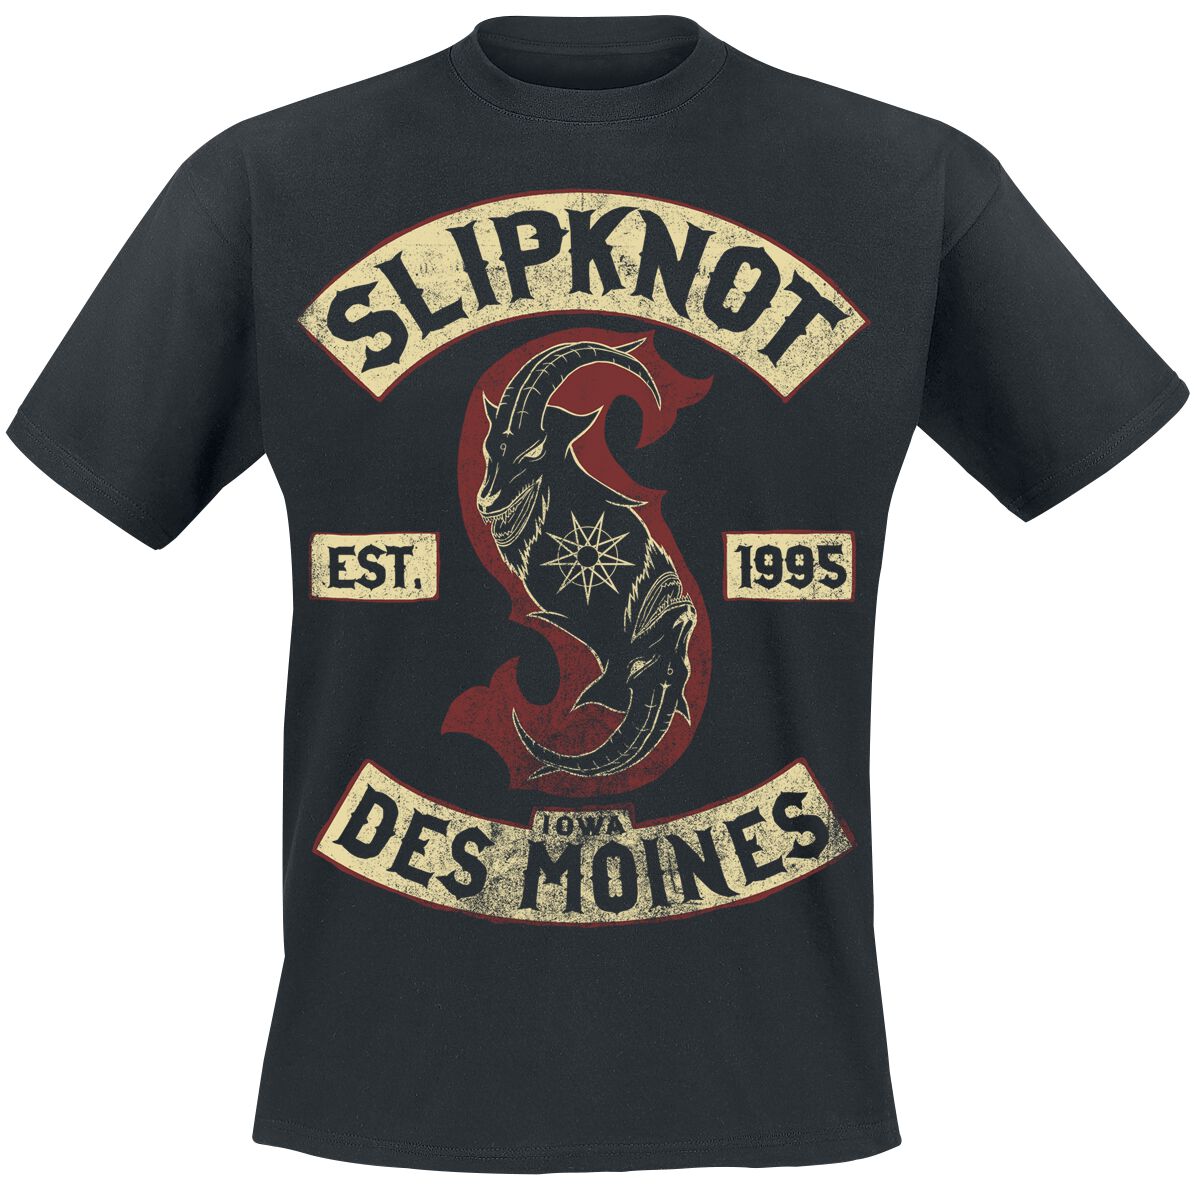 Slipknot T-Shirt - Iowa Des Moines - S bis 3XL - für Männer - Größe S - schwarz  - Lizenziertes Merchandise!